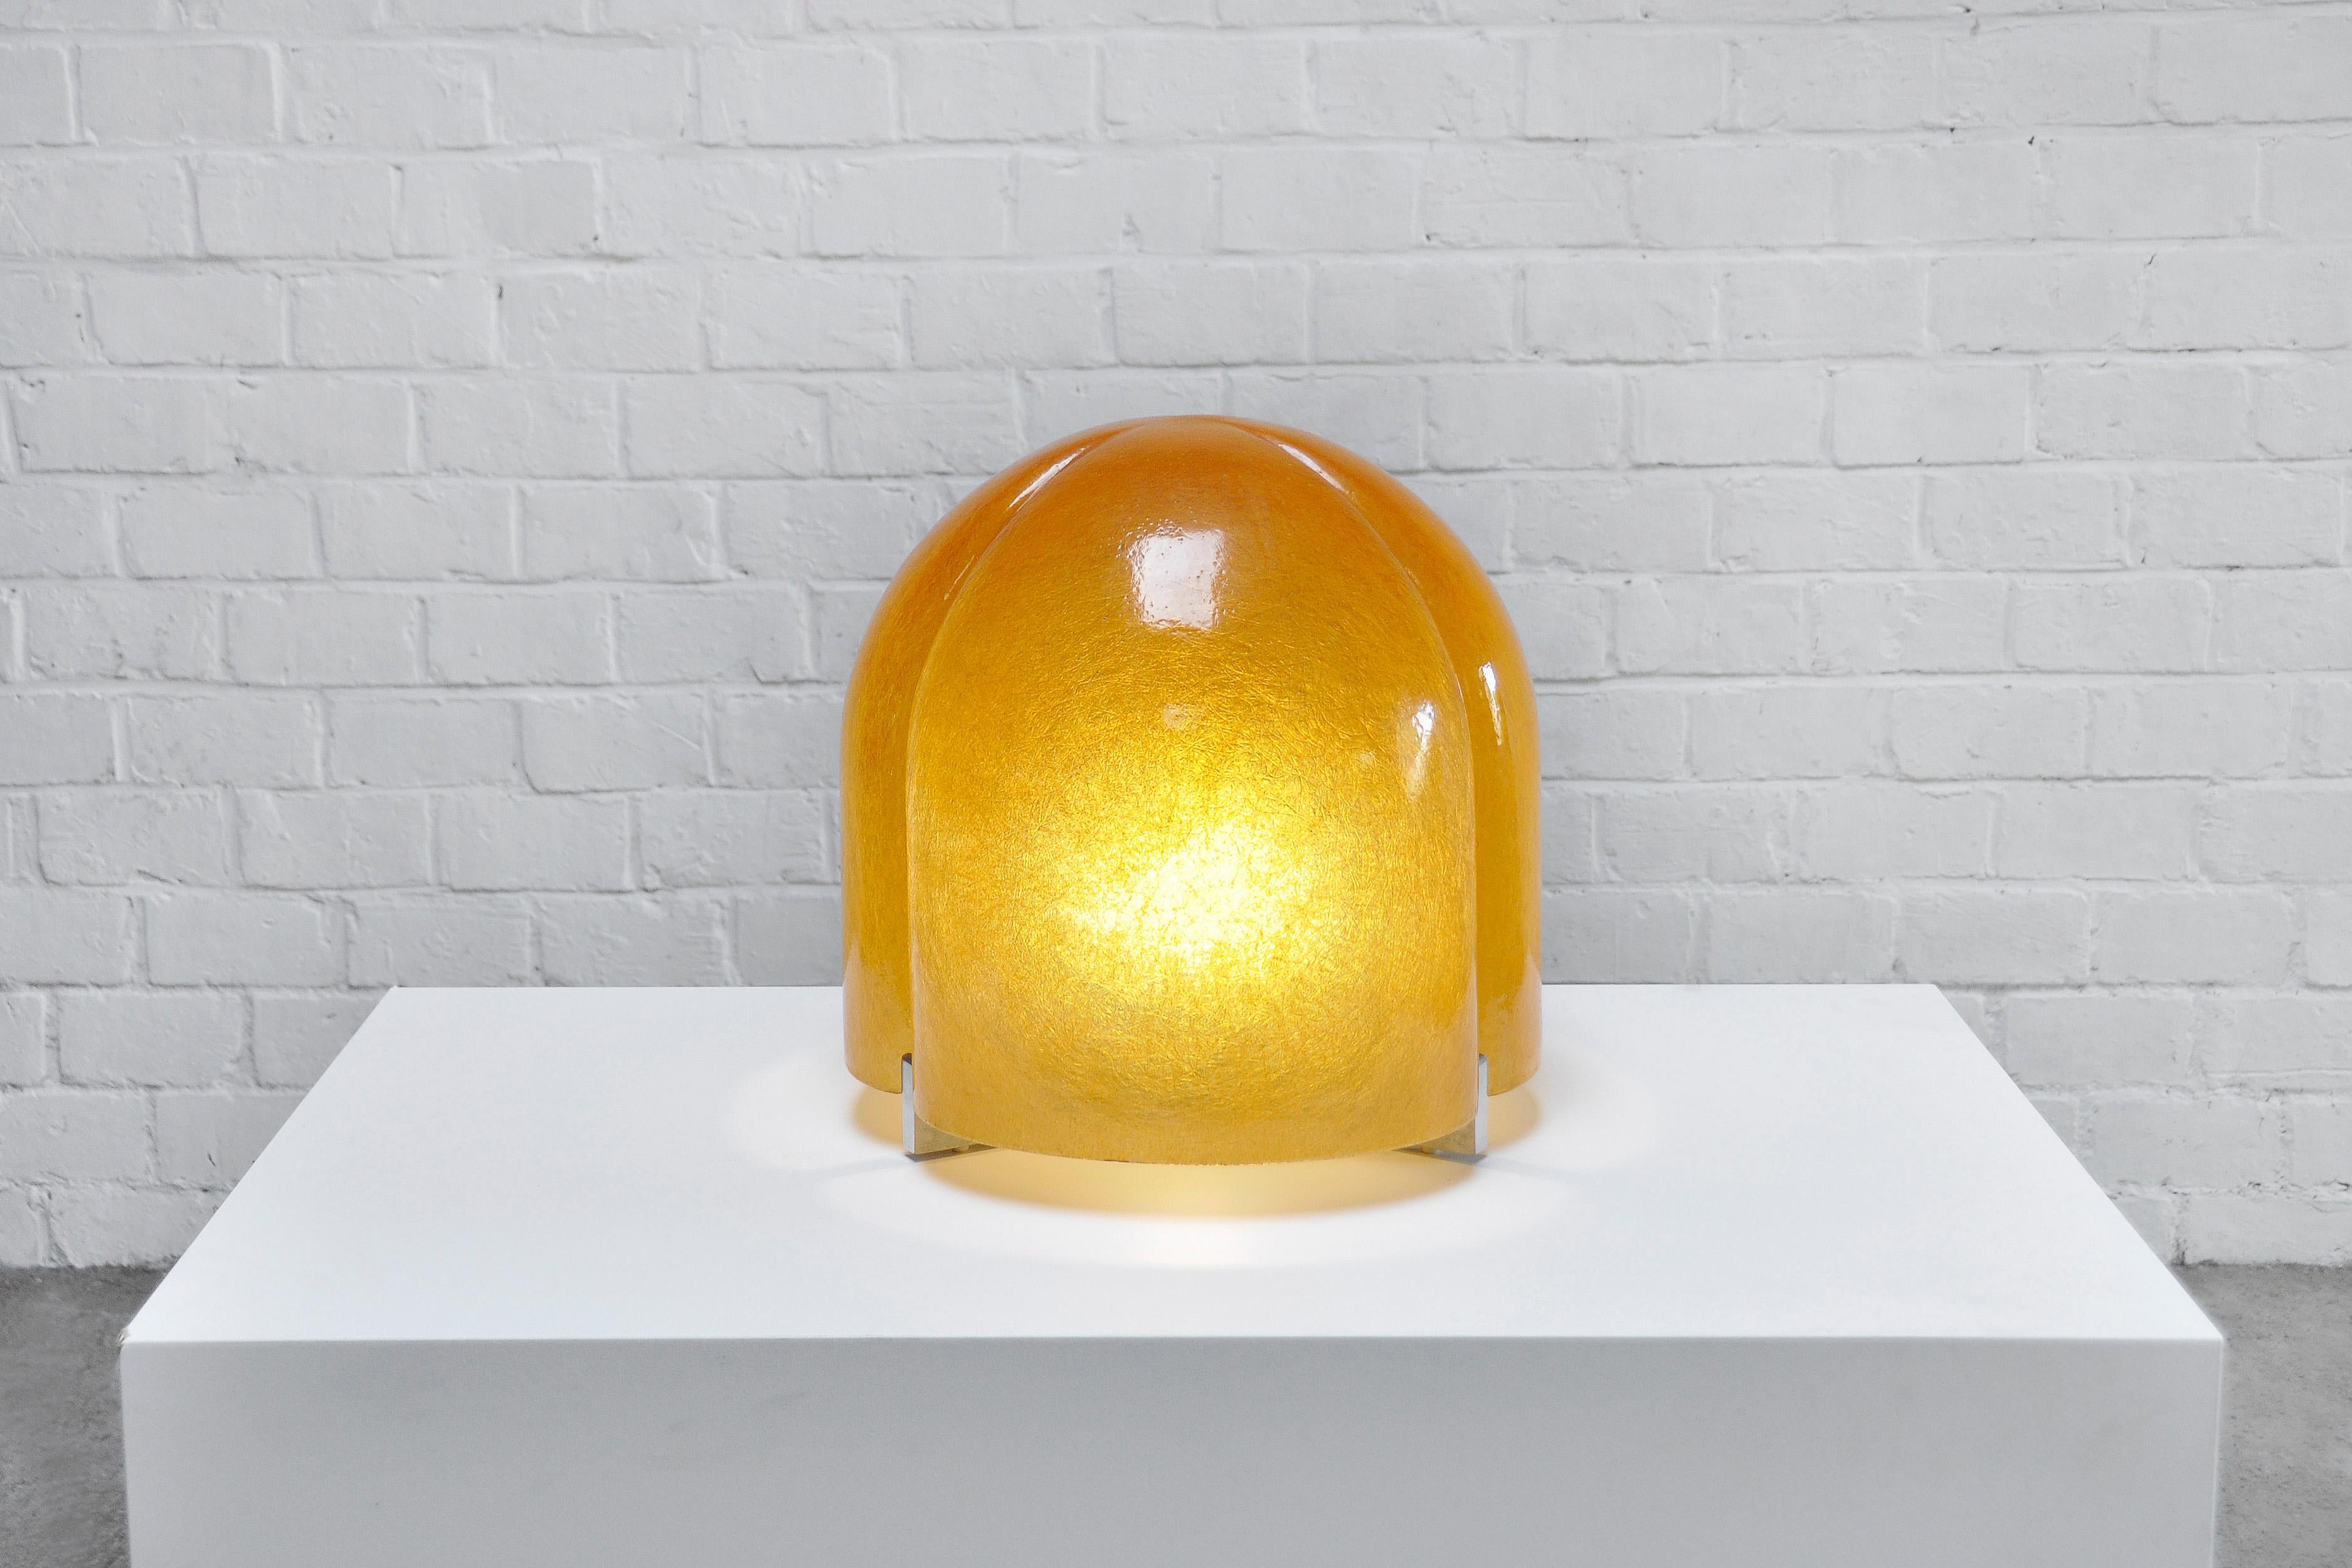 Lampe-objet 'Tricia' de Salvatore Gregorietti pour Valenti, Italie, années 1960. La lampe présente un abat-jour en résine sur une base en métal. La coquille en résine émet une lumière diffuse et douce, ce qui en fait une belle pièce maîtresse. Peut